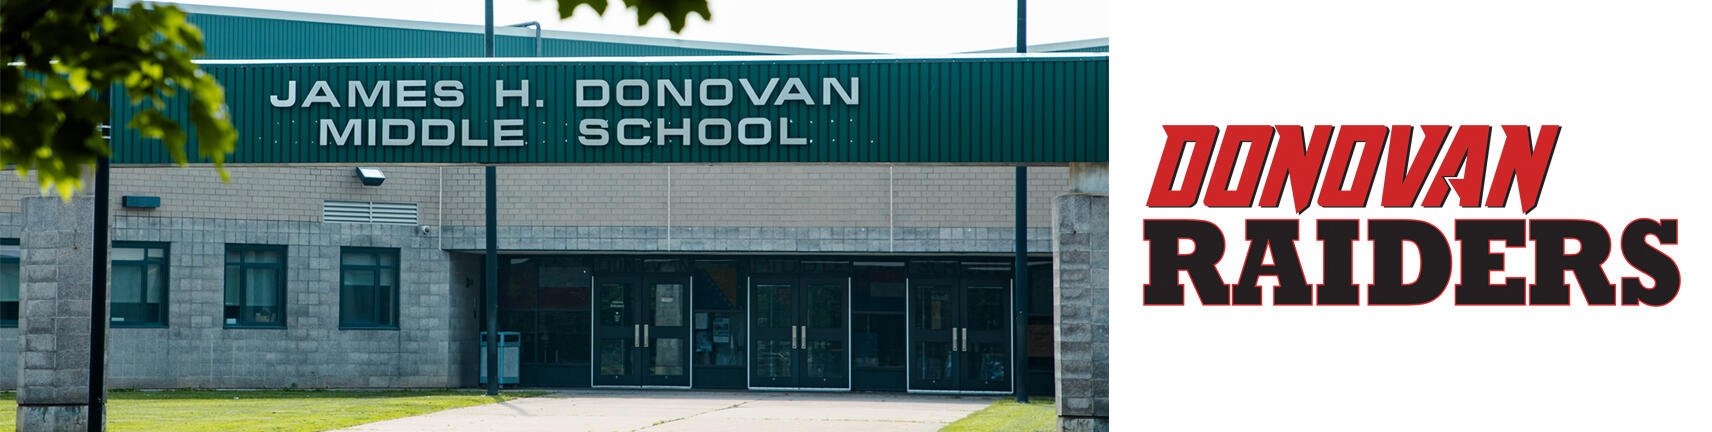 Фотография здания школы Донована и логотип Donovan Raiders